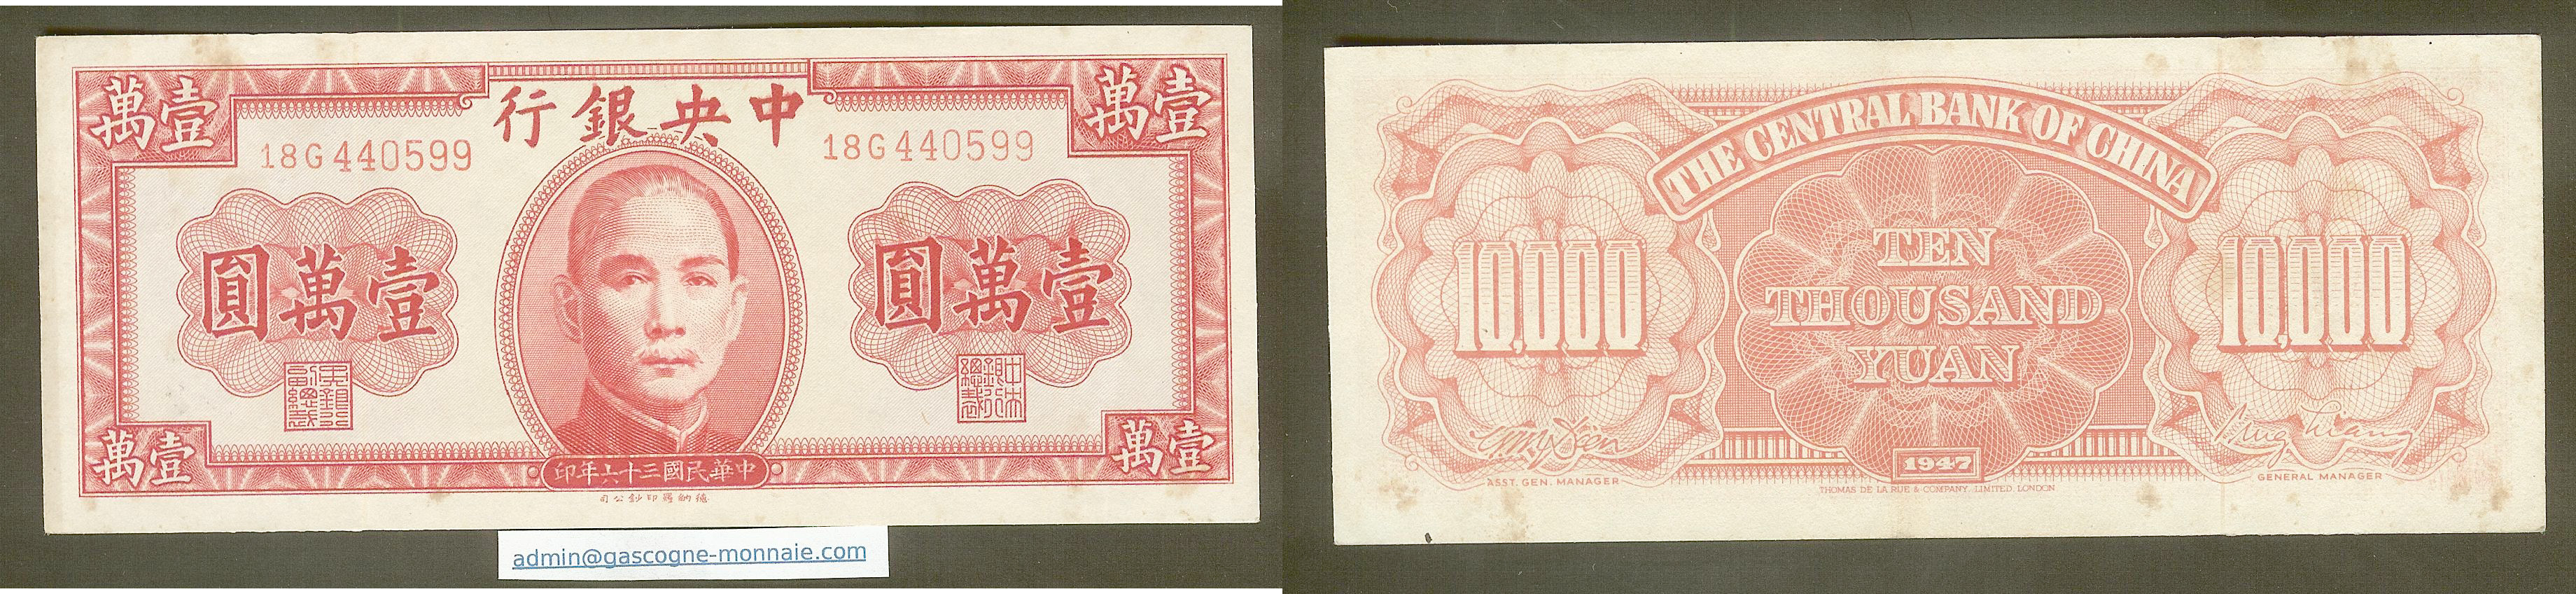 China 10,000 yuan 1947 Central Bank gEF